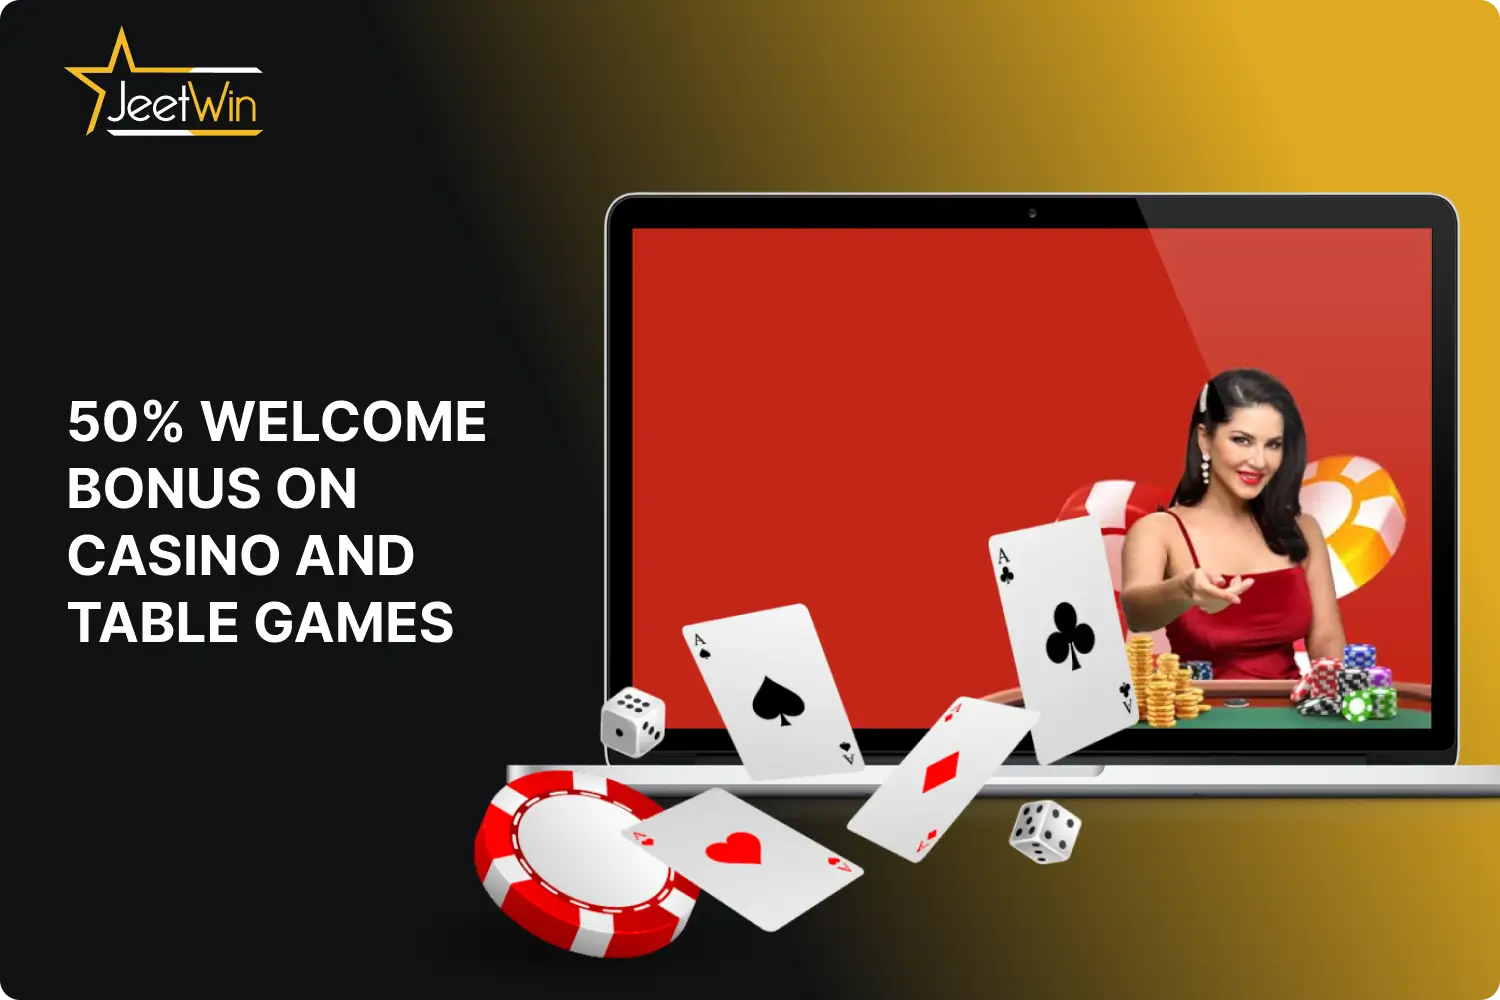 भारत के खिलाड़ी जीतविन ऑनलाइन कैसीनो में कैसीनो और टेबल गेम पर स्वागत बोनस प्राप्त कर सकते हैं